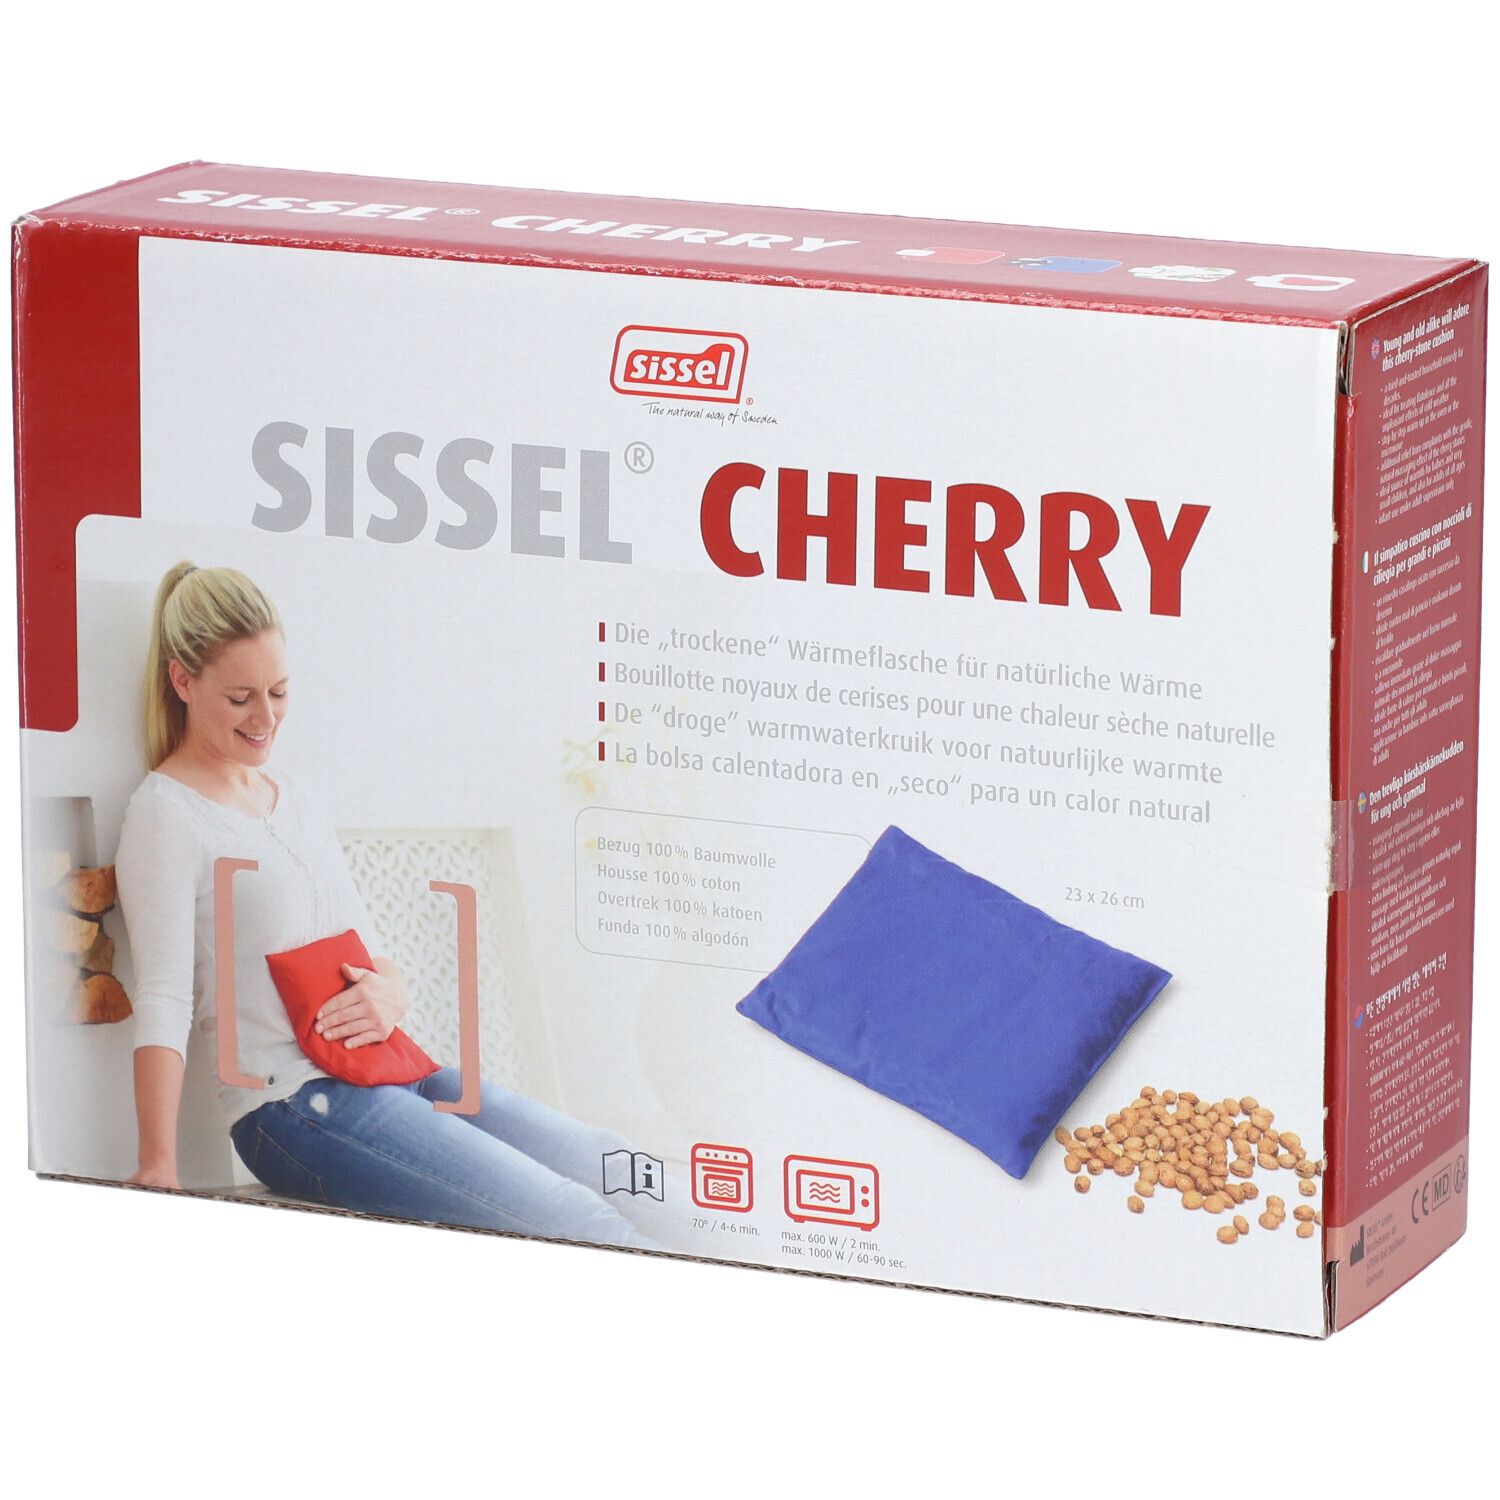 Sissel® Cherry Coussin Noyaux de Cerise 24 cm x 26 cm Bleu